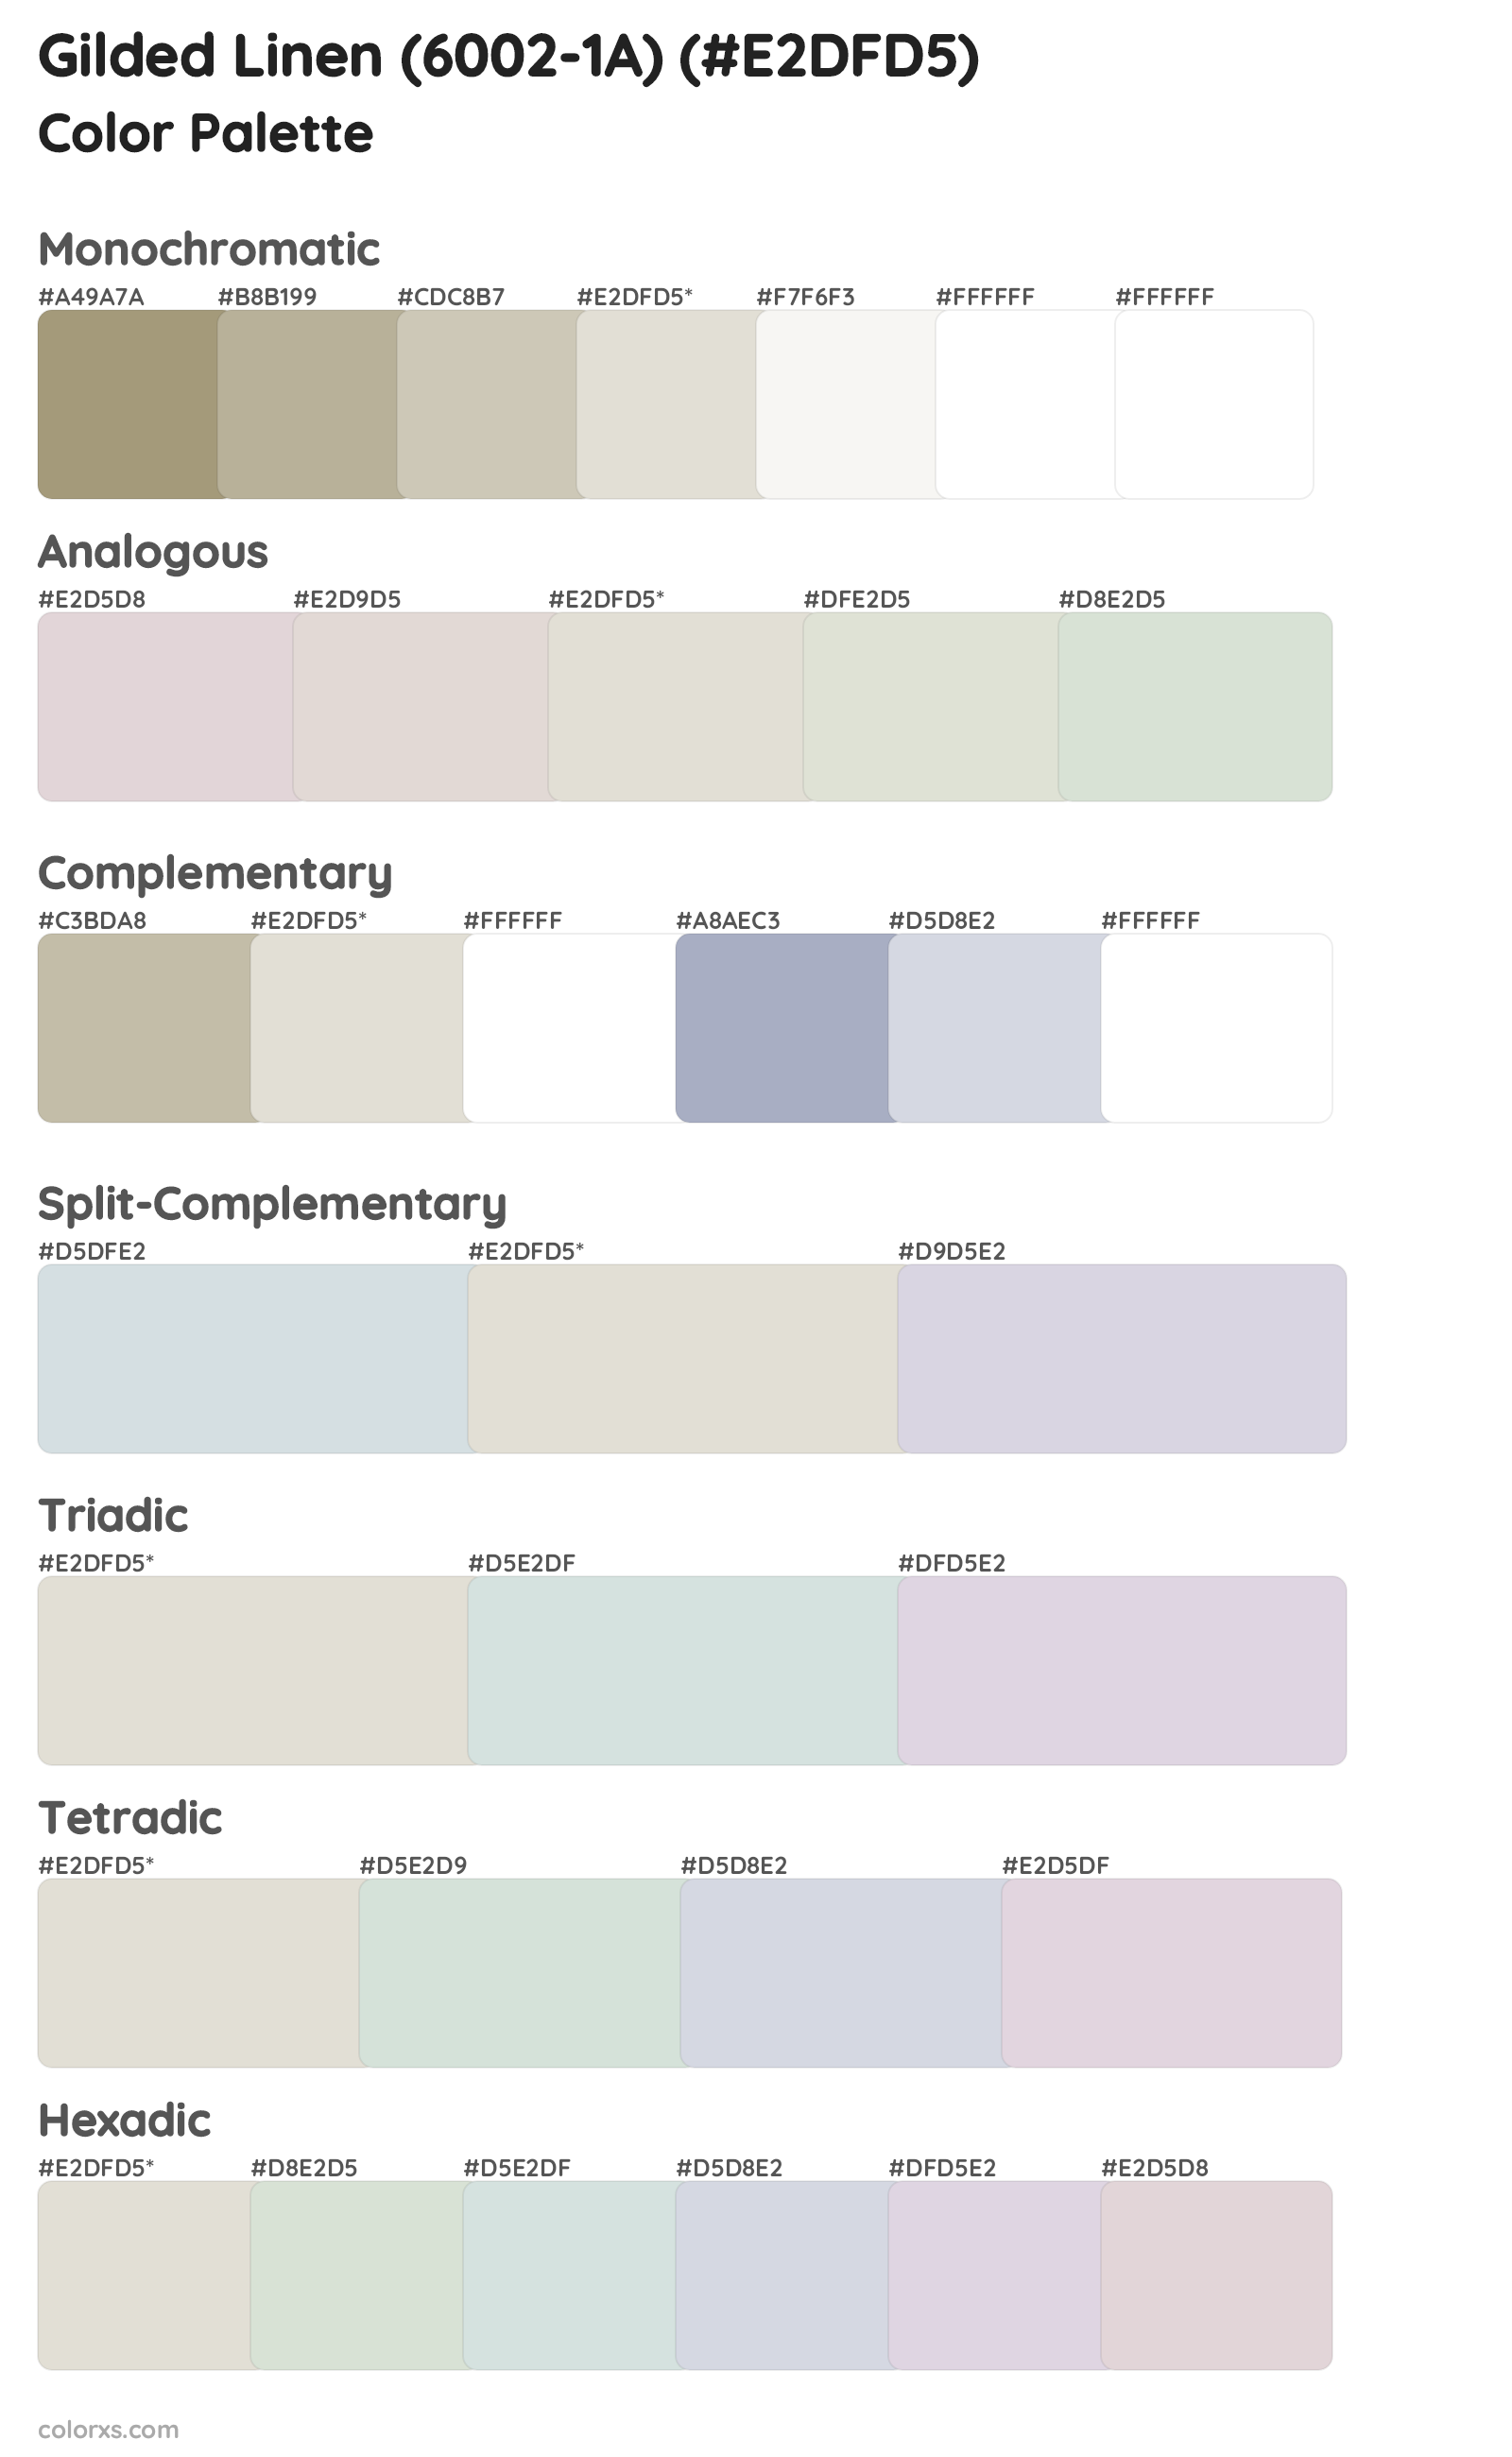 Gilded Linen (6002-1A) Color Scheme Palettes